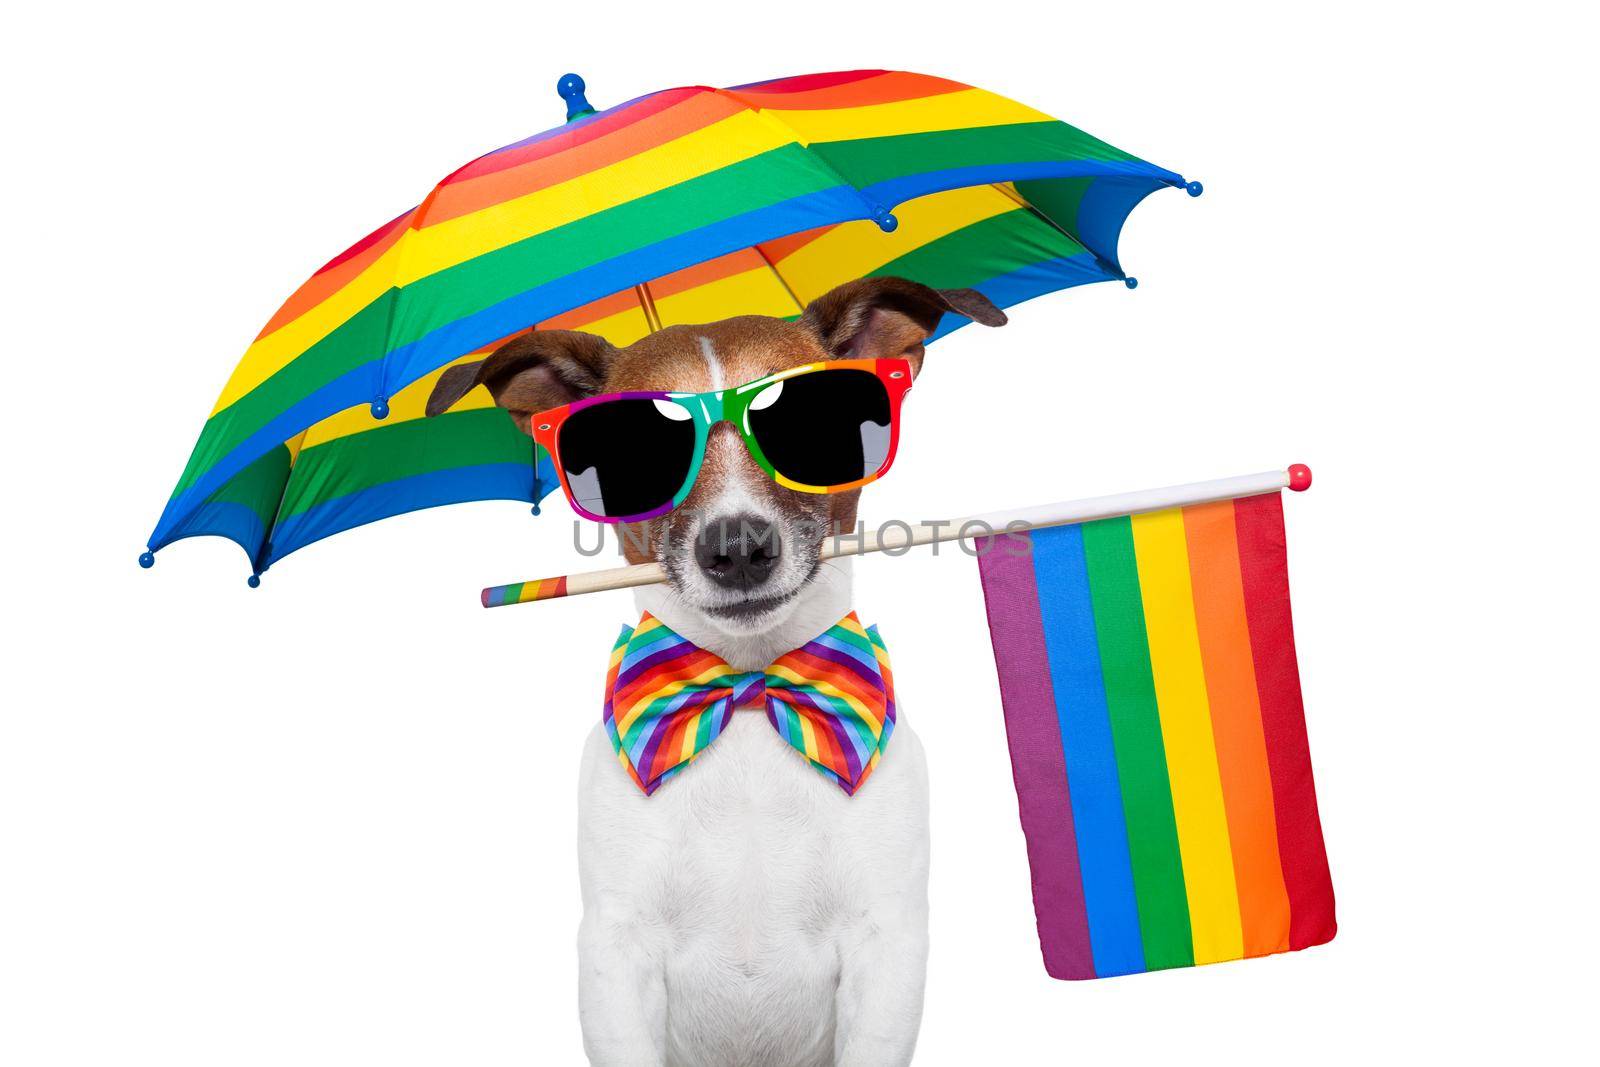 GAY PRIDE DOG by Brosch